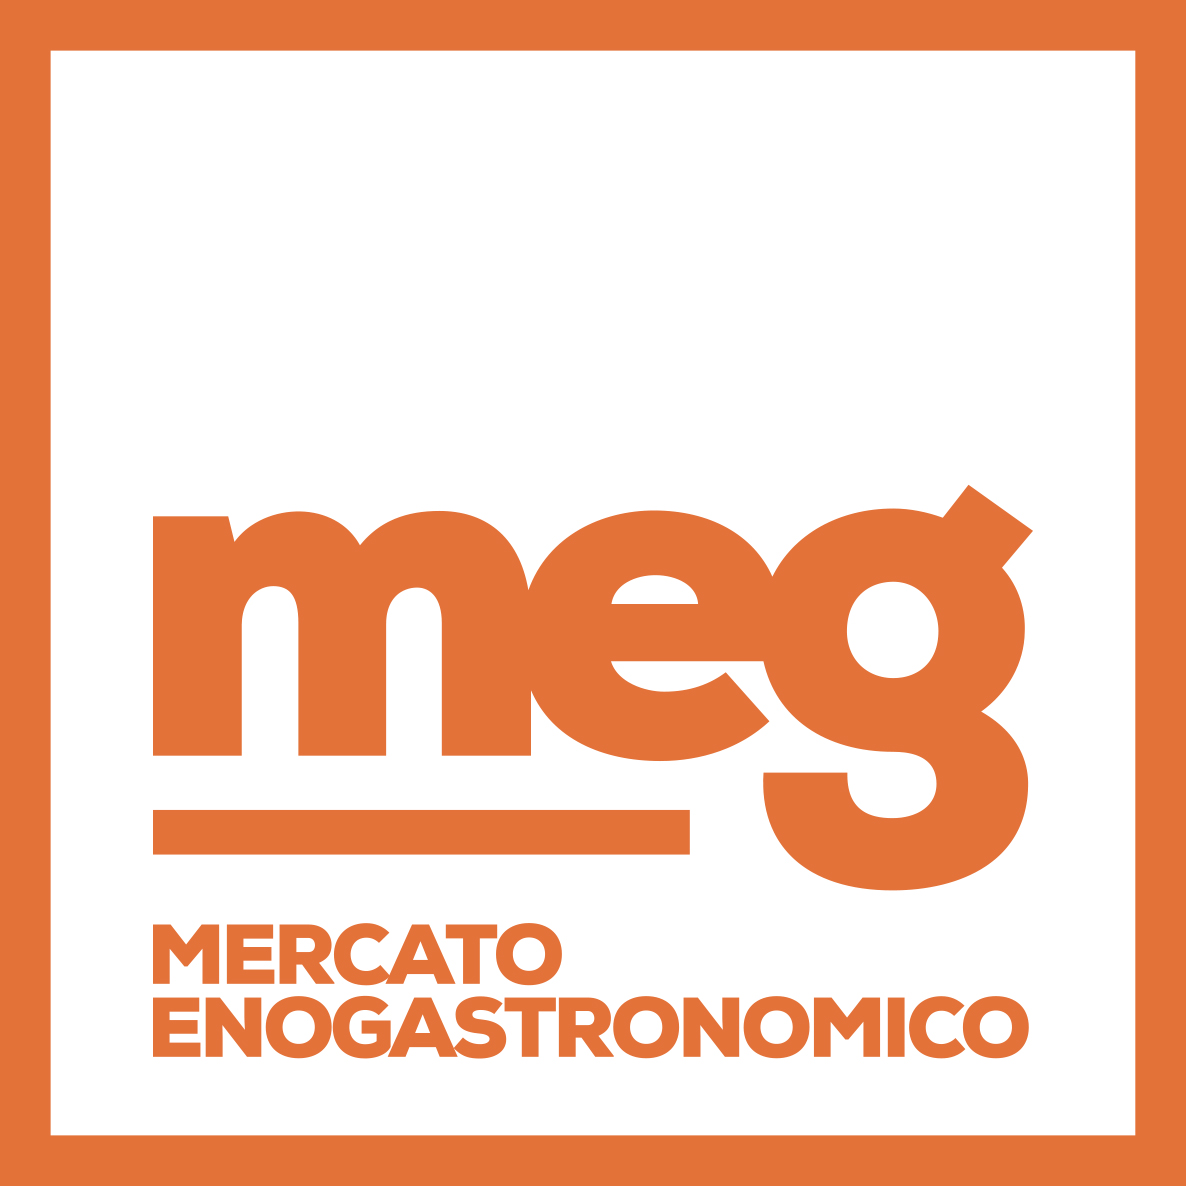 MEG MERCATO ENOGASTRONOMICO SRL